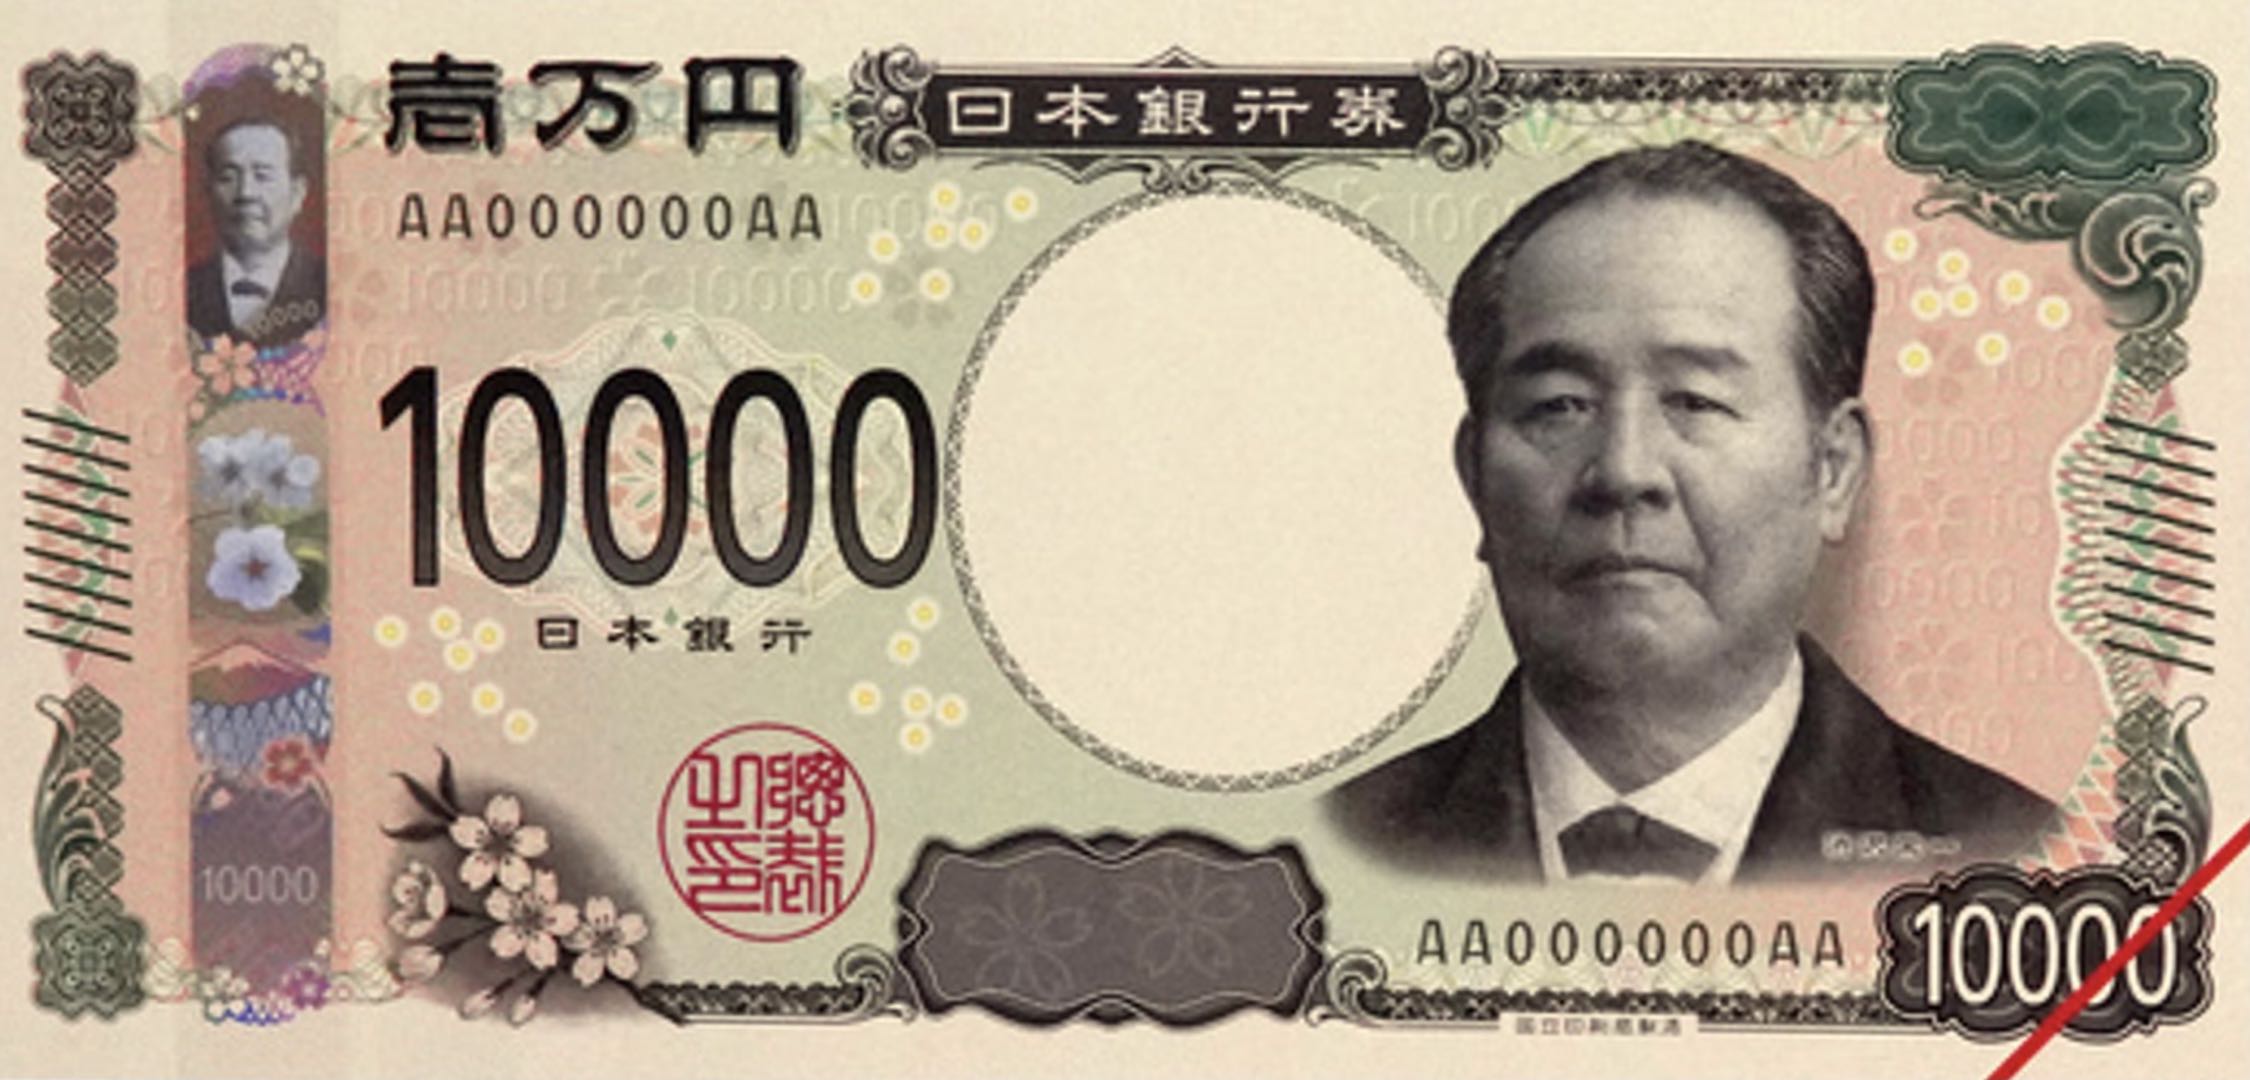 渋沢栄一の一万円札